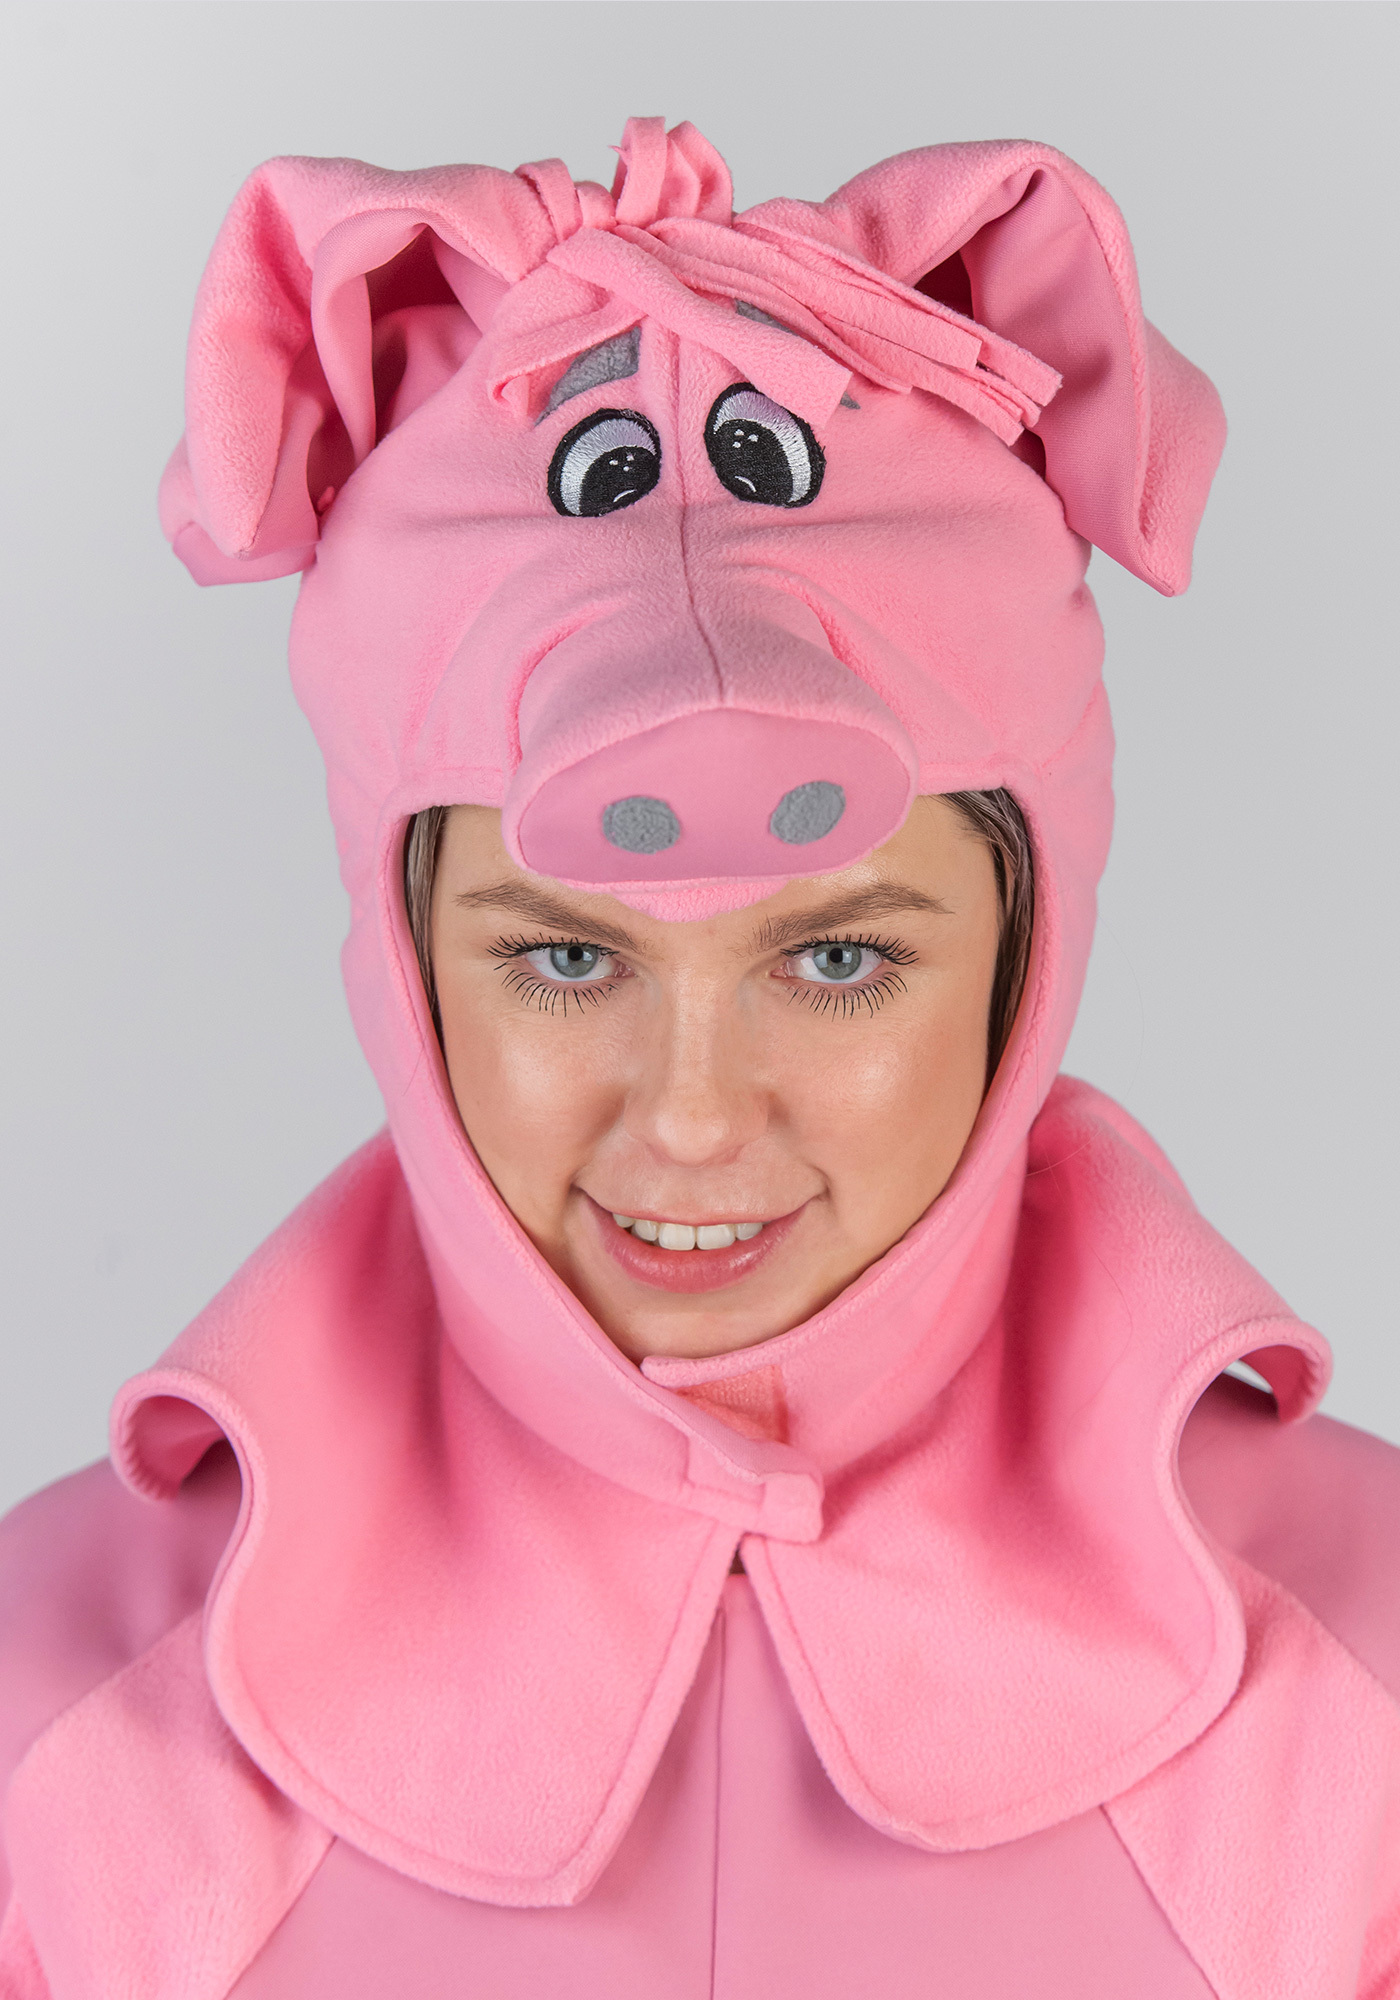 Из чего можно сшить новогодний костюм свиньи, какие материалы и принадлежности понадобятся?